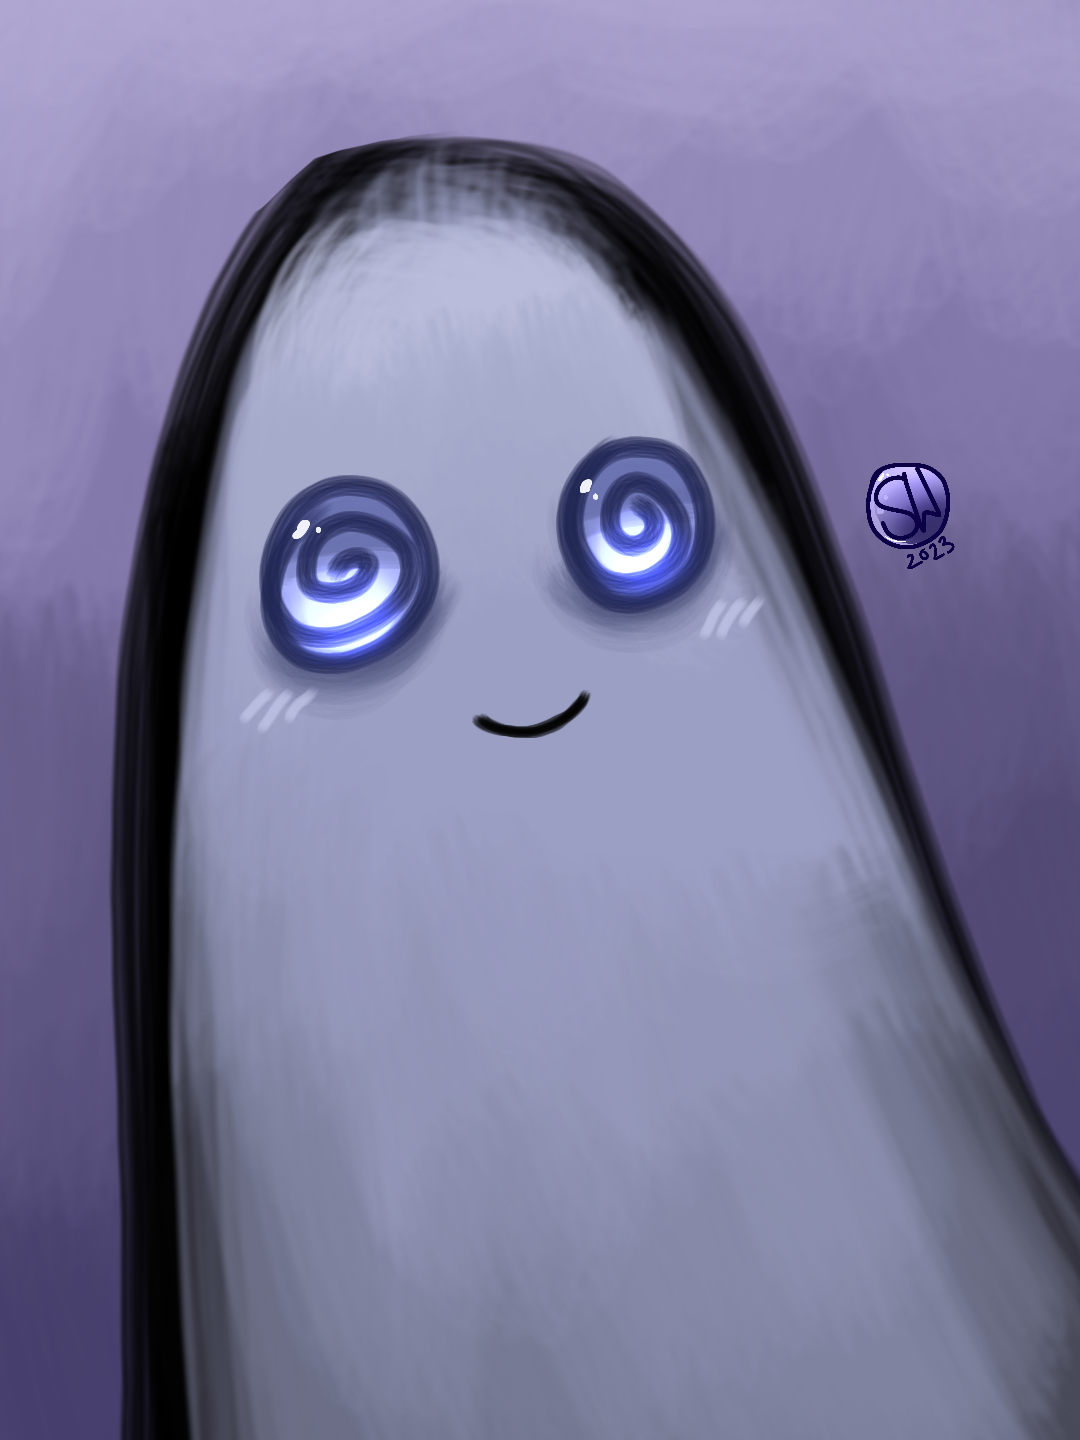 Dizzy Blue Ghost